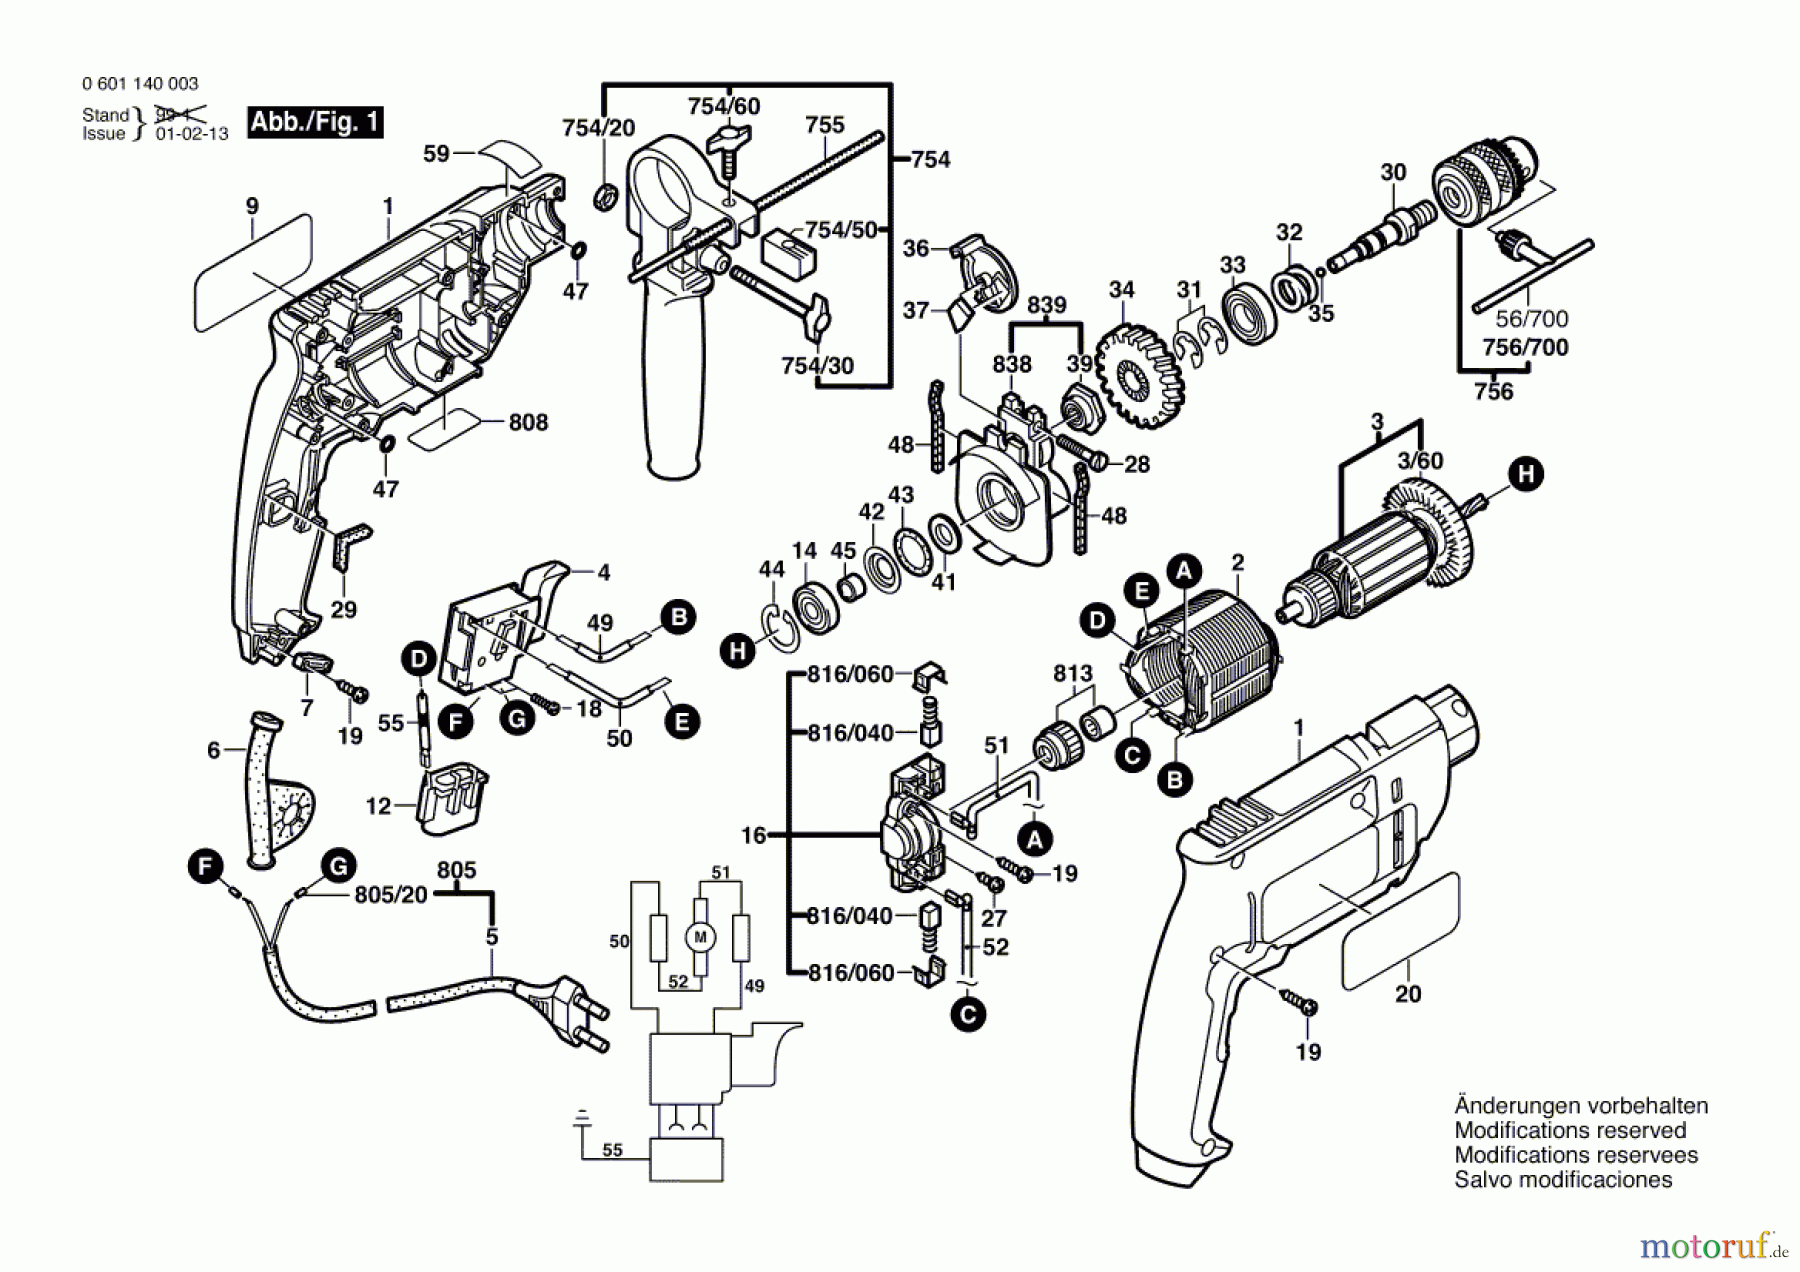  Bosch Werkzeug Schlagbohrmaschine GSB 16 Seite 1